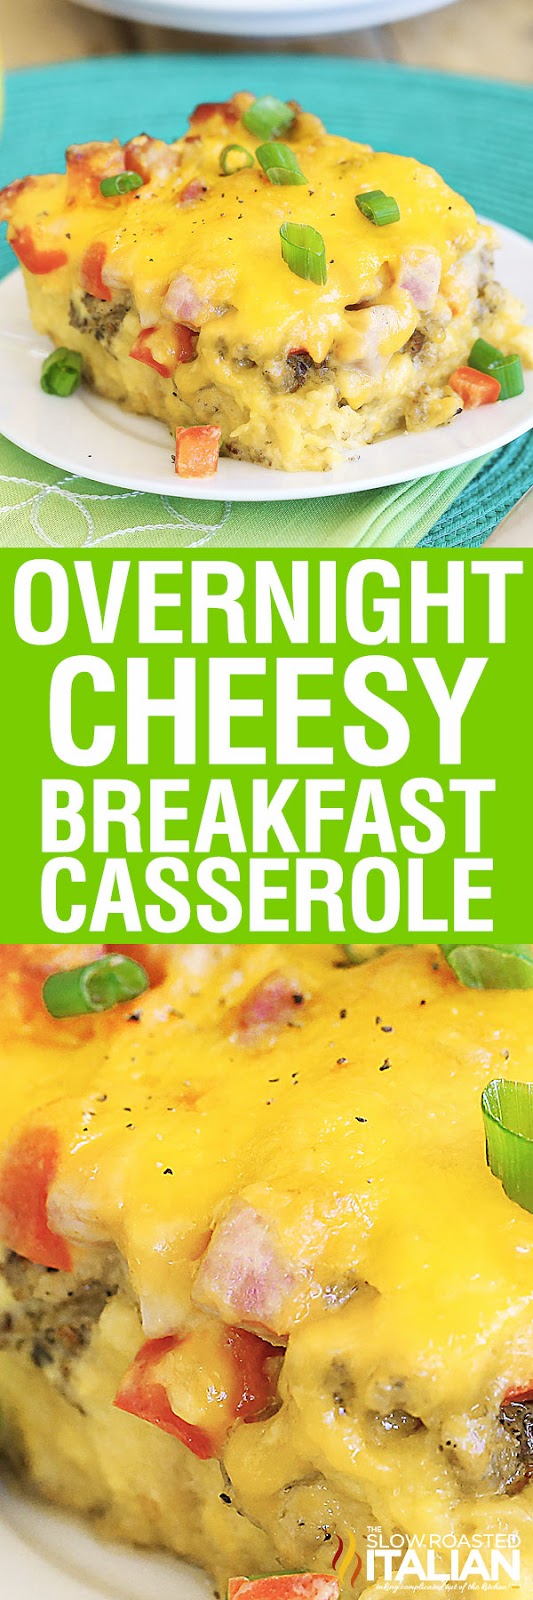 Overnight Cheesy Breakfast Casserole